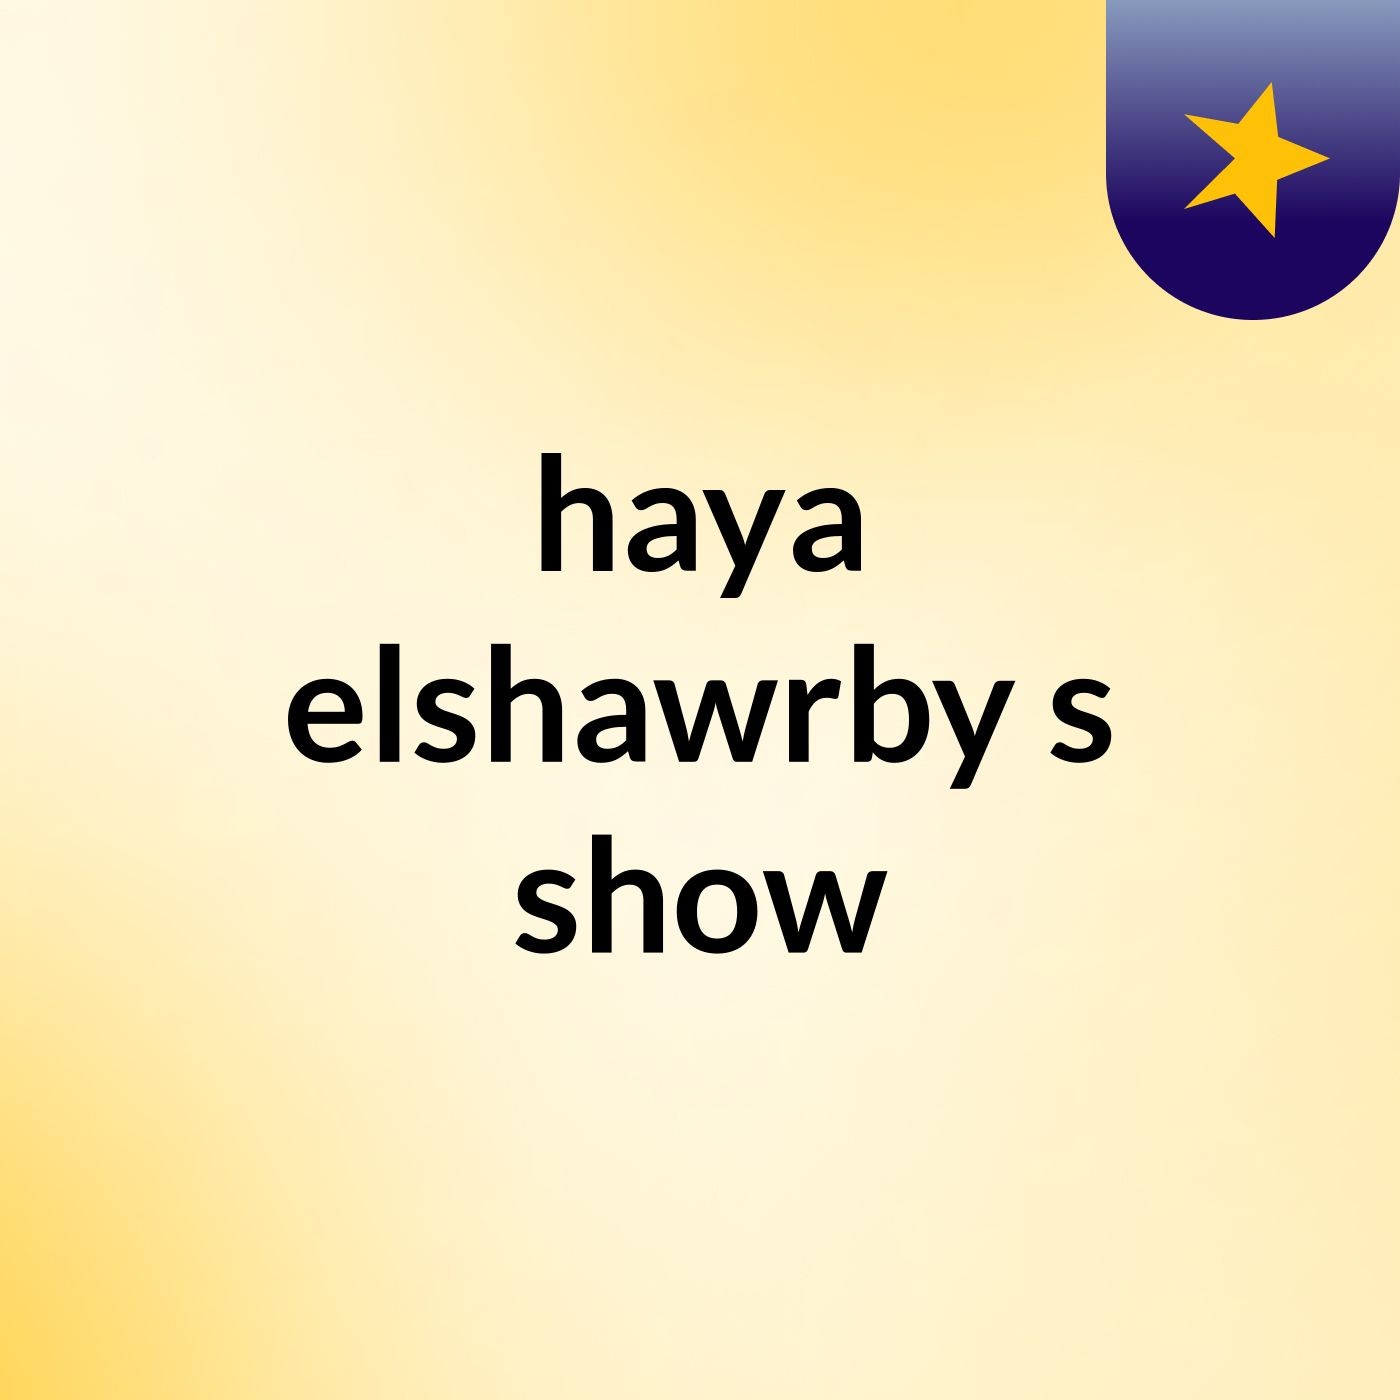 haya elshawrby's show